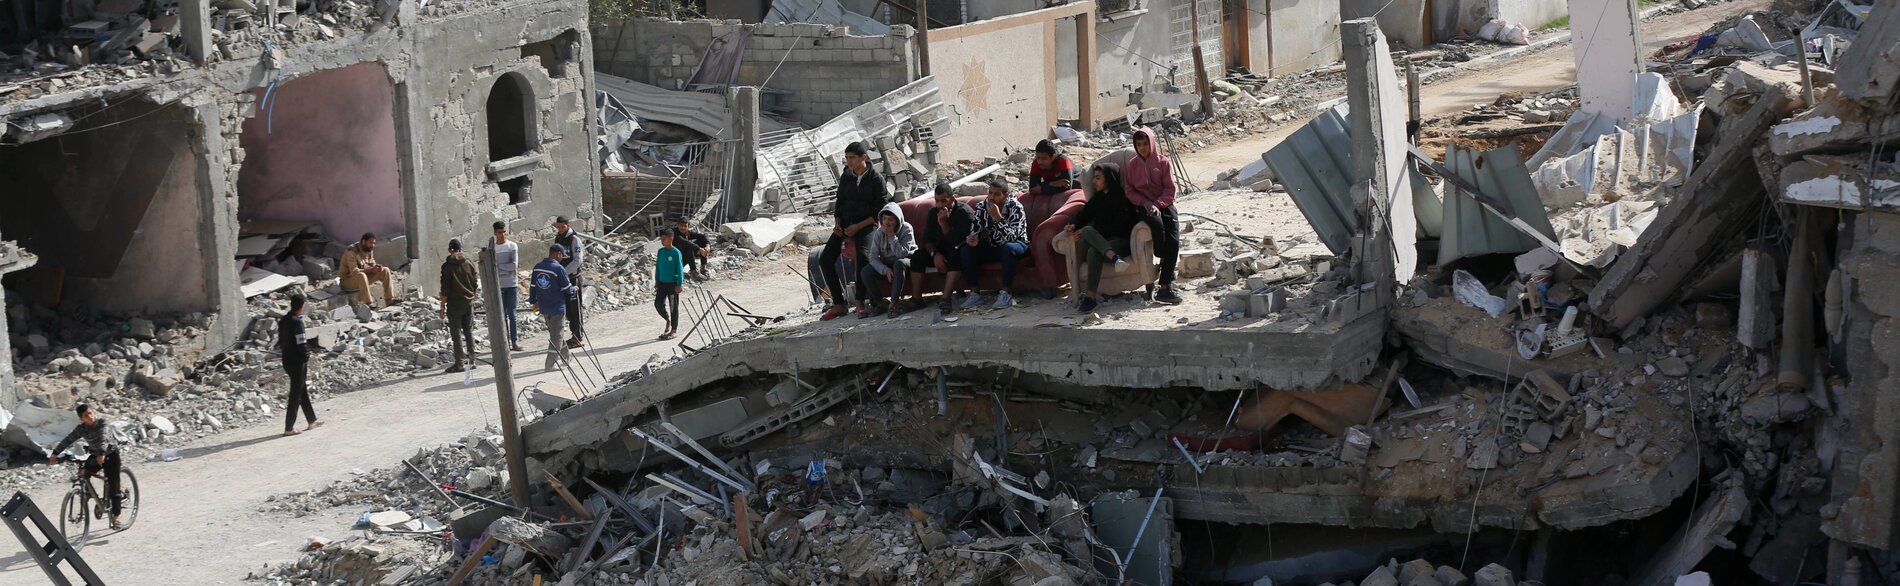 لا يزال الضحايا والدمار في ازدياد منذ استئناف الأعمال القتالية في غزة. وحركة الموظفين العاملين في المجال الإنساني محدودة للغاية وبات الوصول إلى الشمال مقطوعا كليًا الآن. تصوير وكالة الأونروا